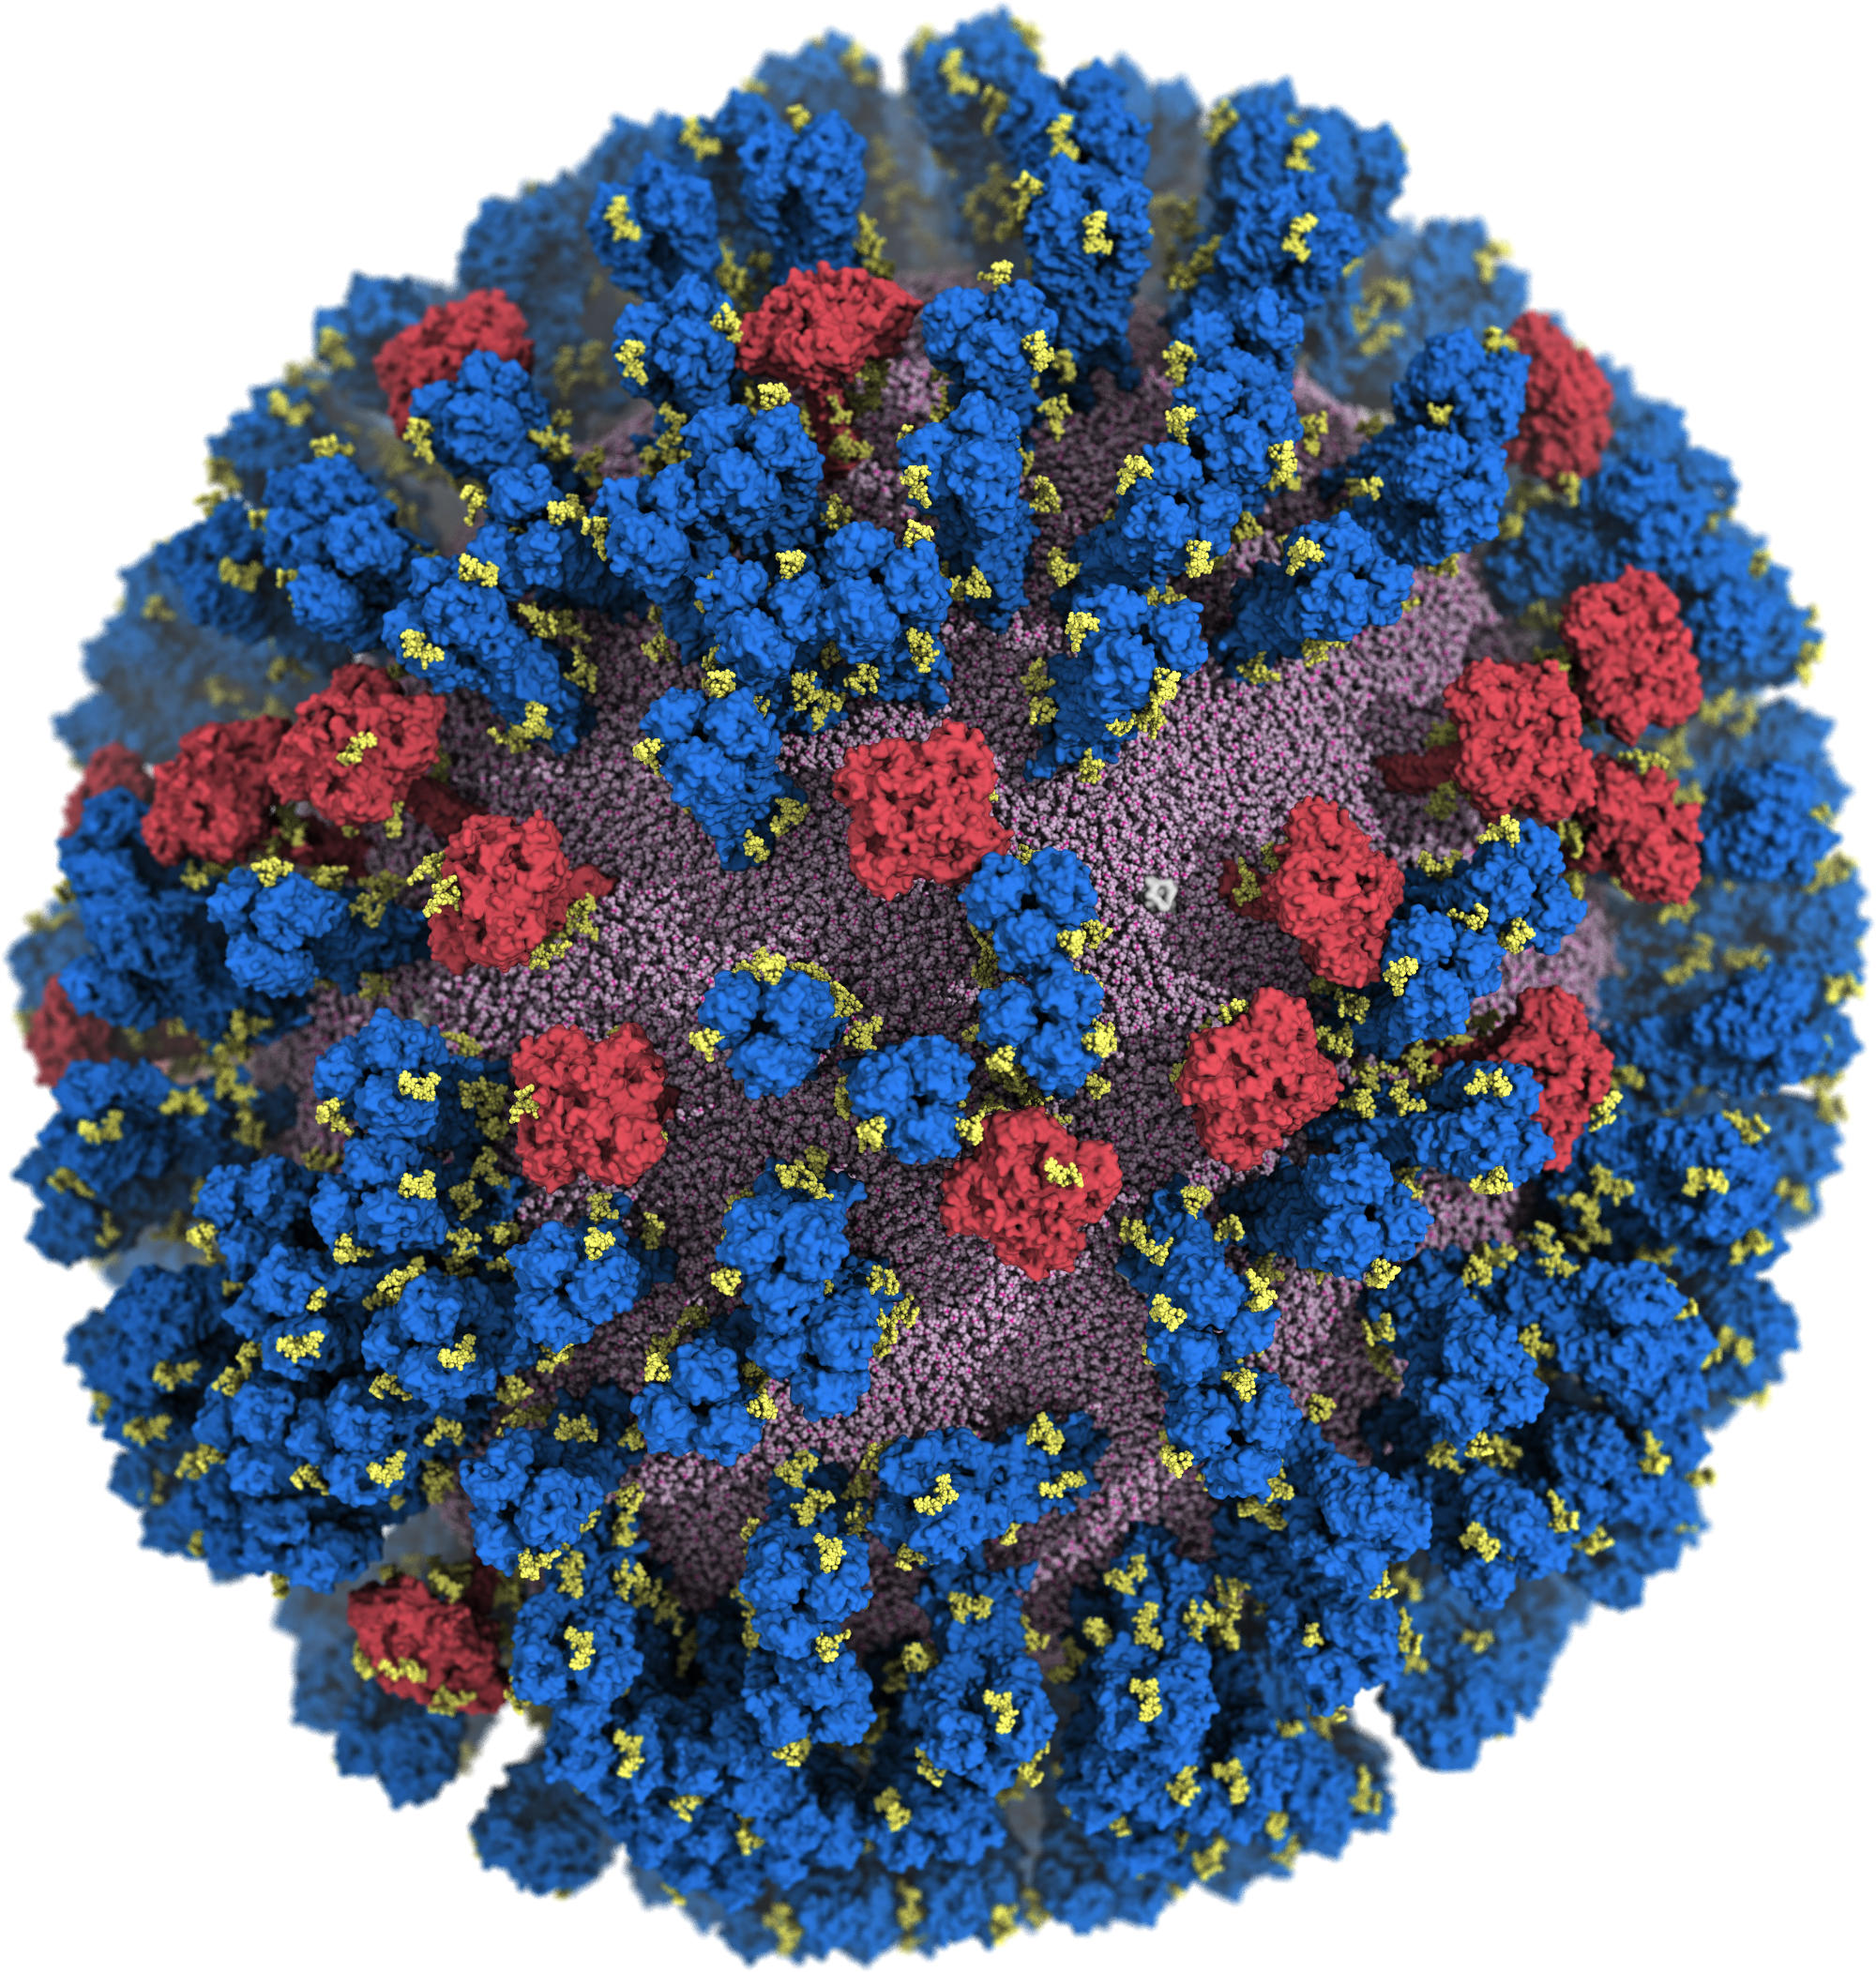 Atomic Resolution Image of H1N1 Influenza Virus